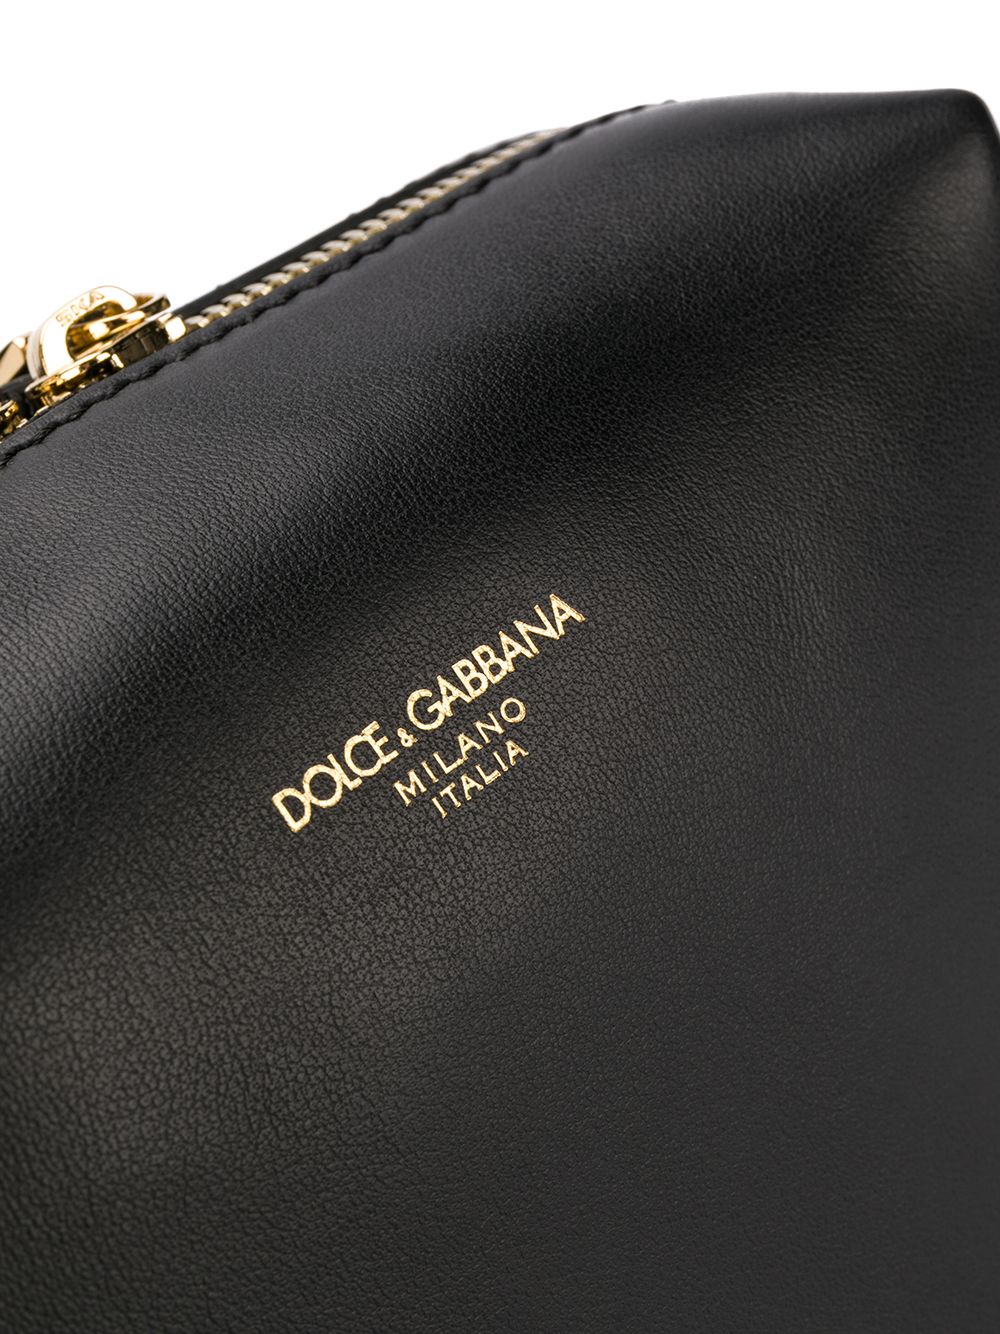 фото Dolce & gabbana классическая поясная сумка